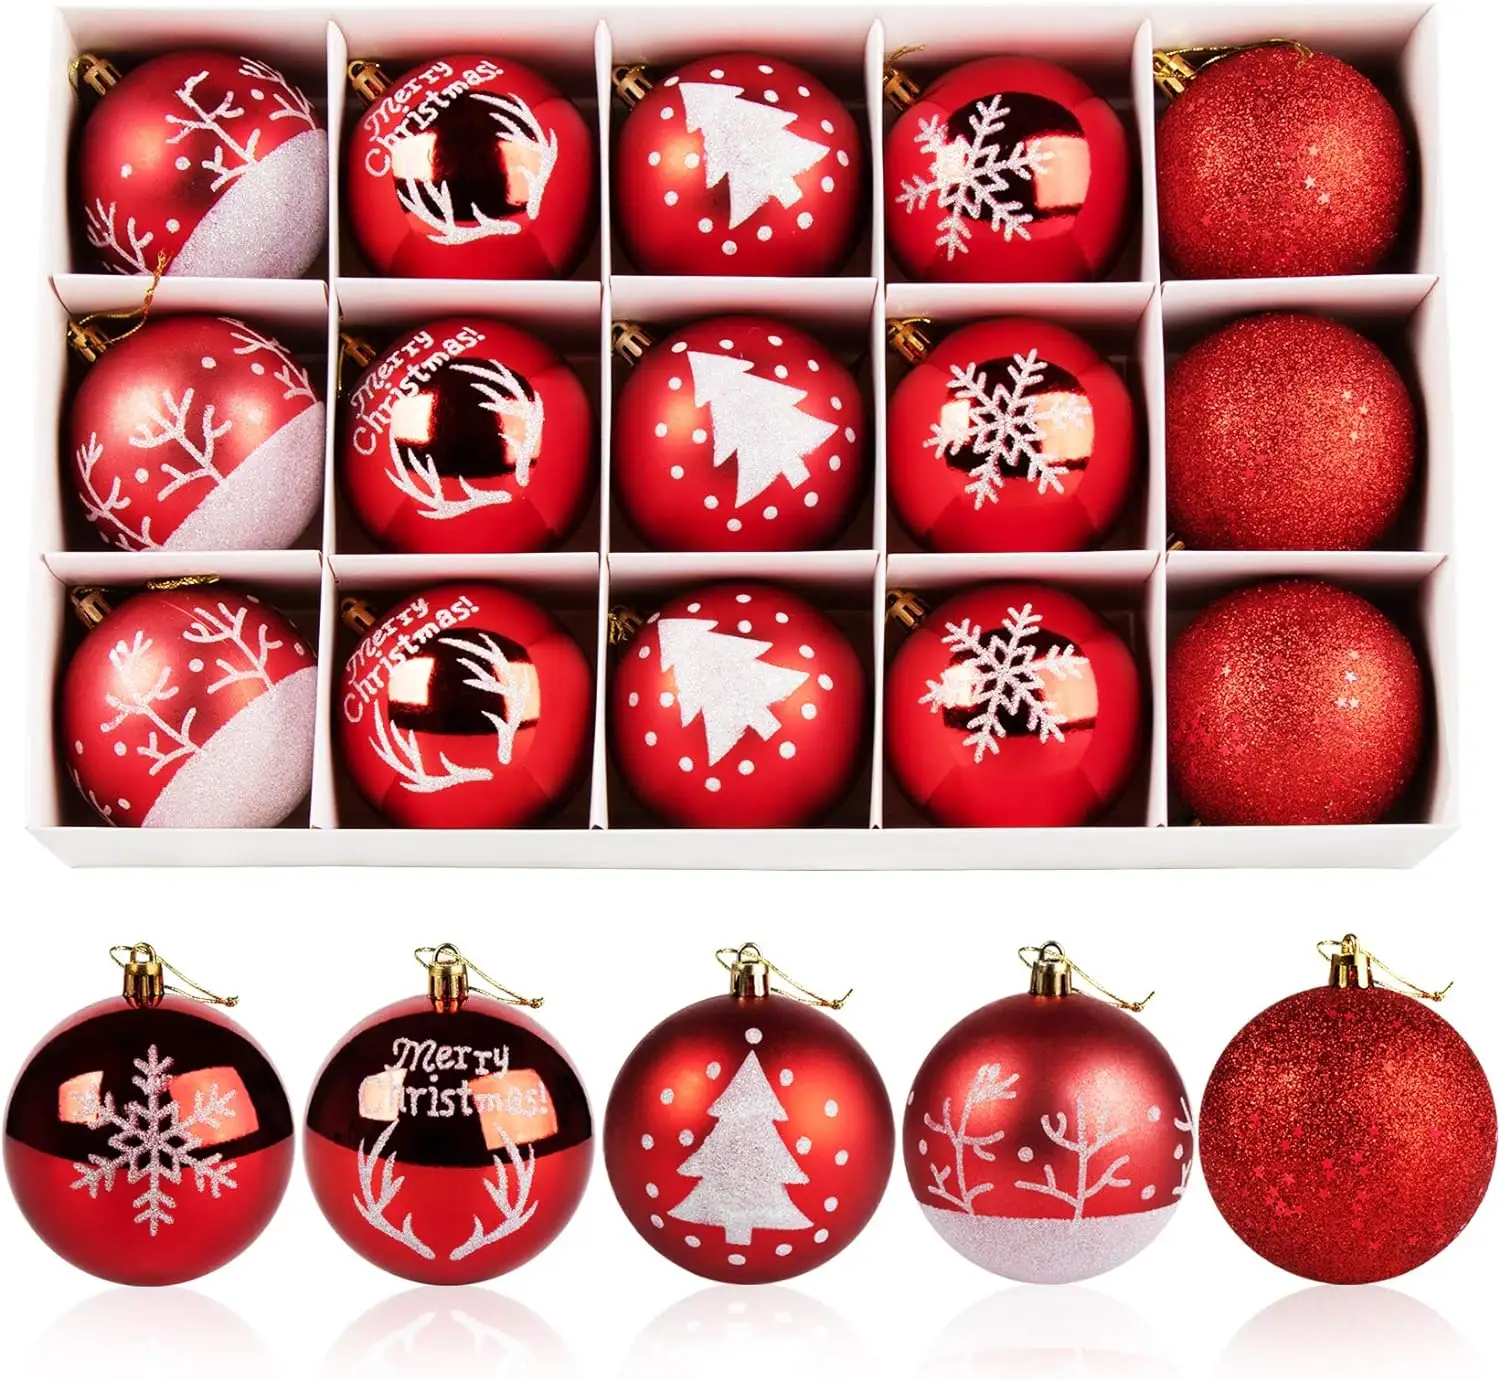 Türük Merry Tree sıcak satış 8cm kırmızı ve beyaz boyalı plastik yılbaşı topu el boyalı tasarımları ile ağaç süslemeleri için